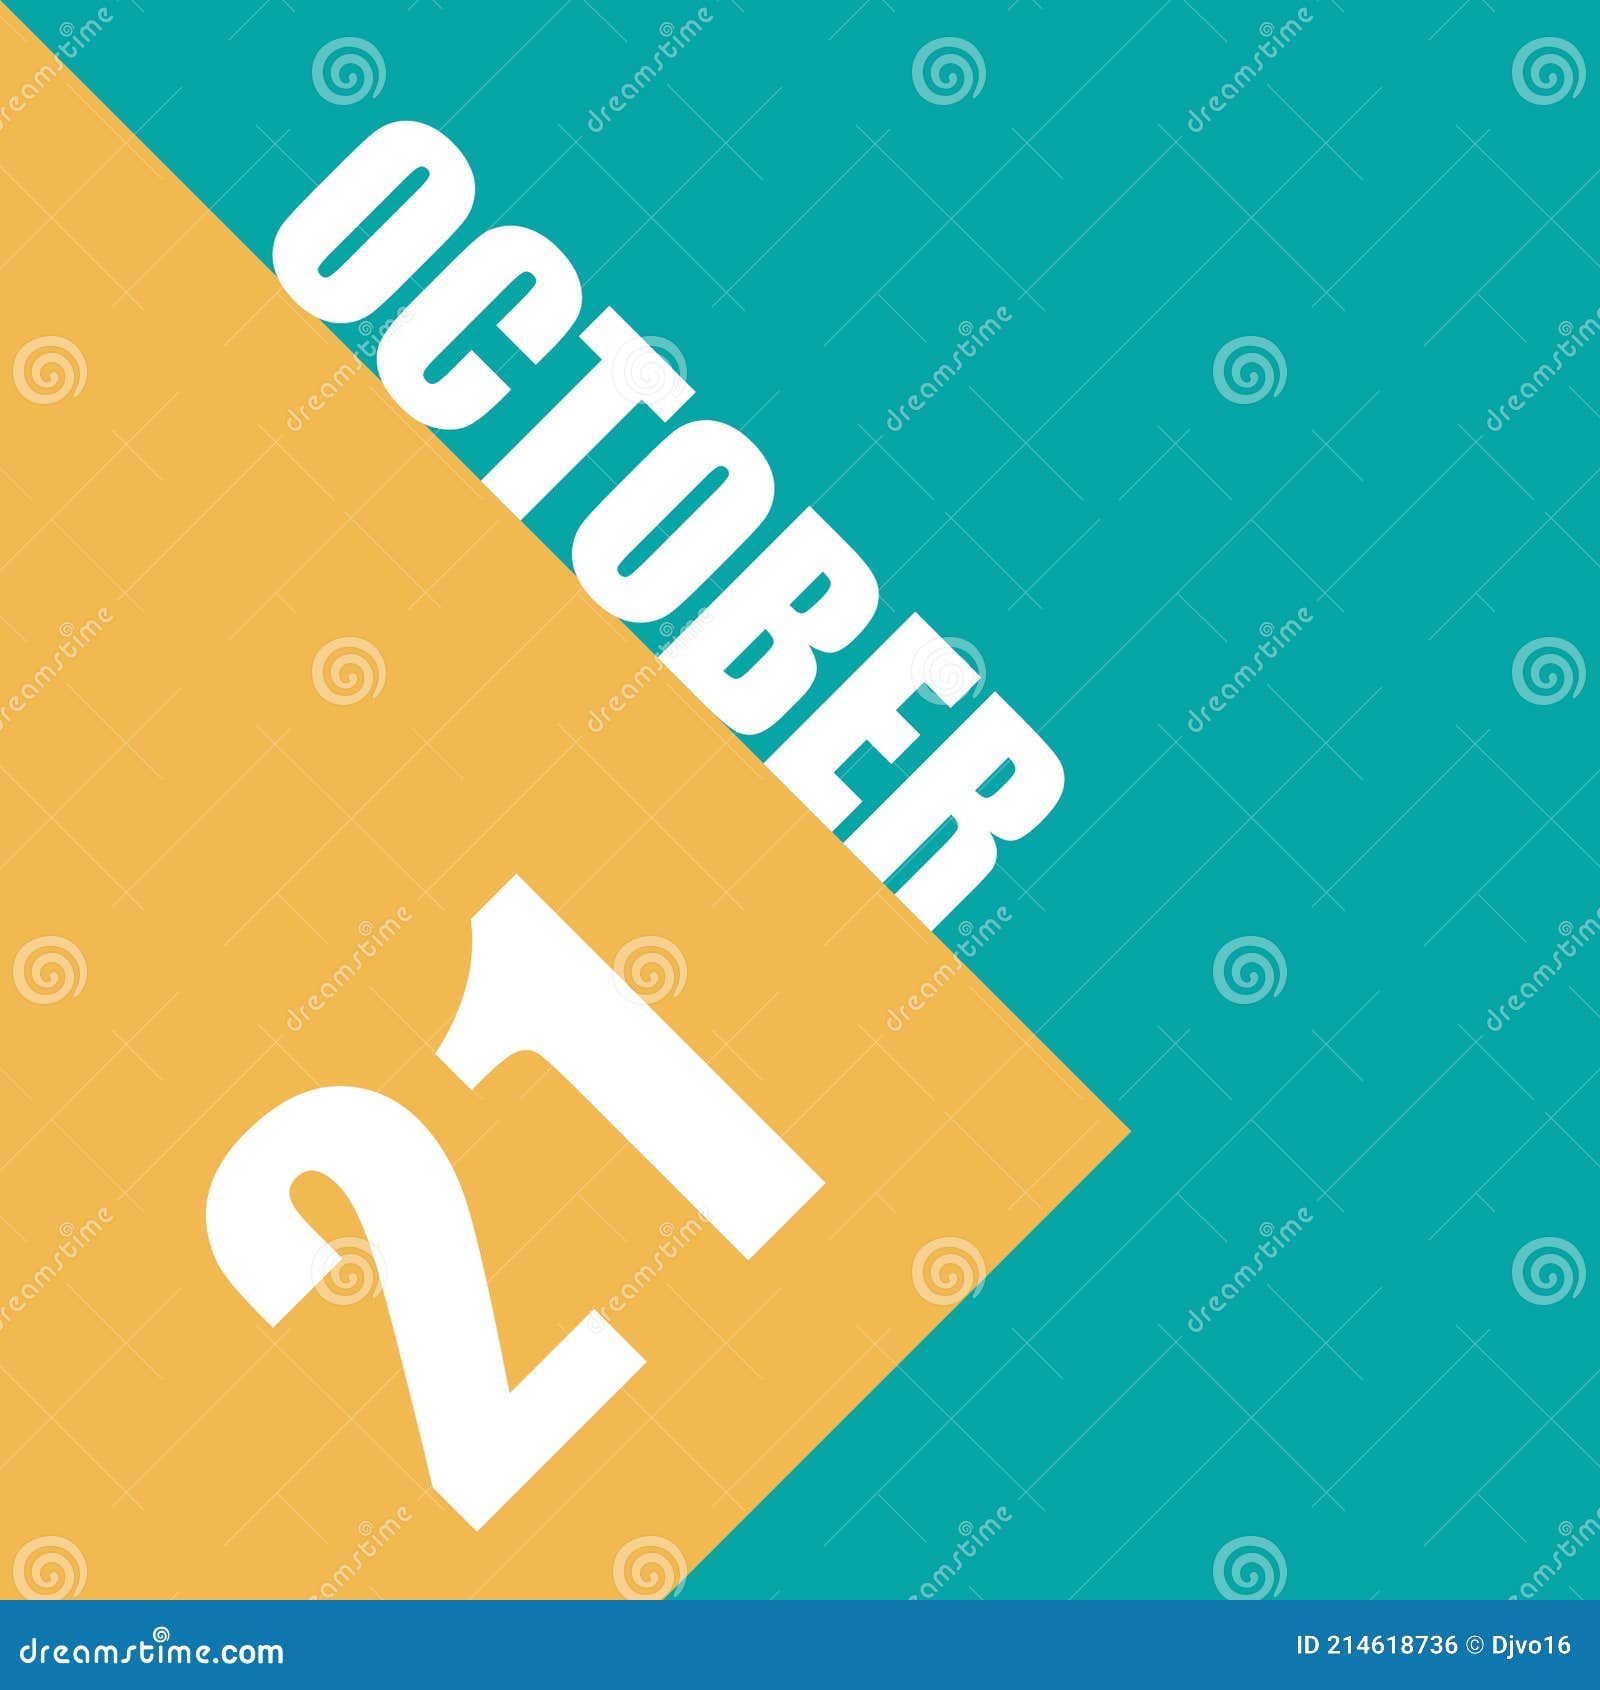 October 21st Day 20 Of Monthillustration Of Date Inscription On